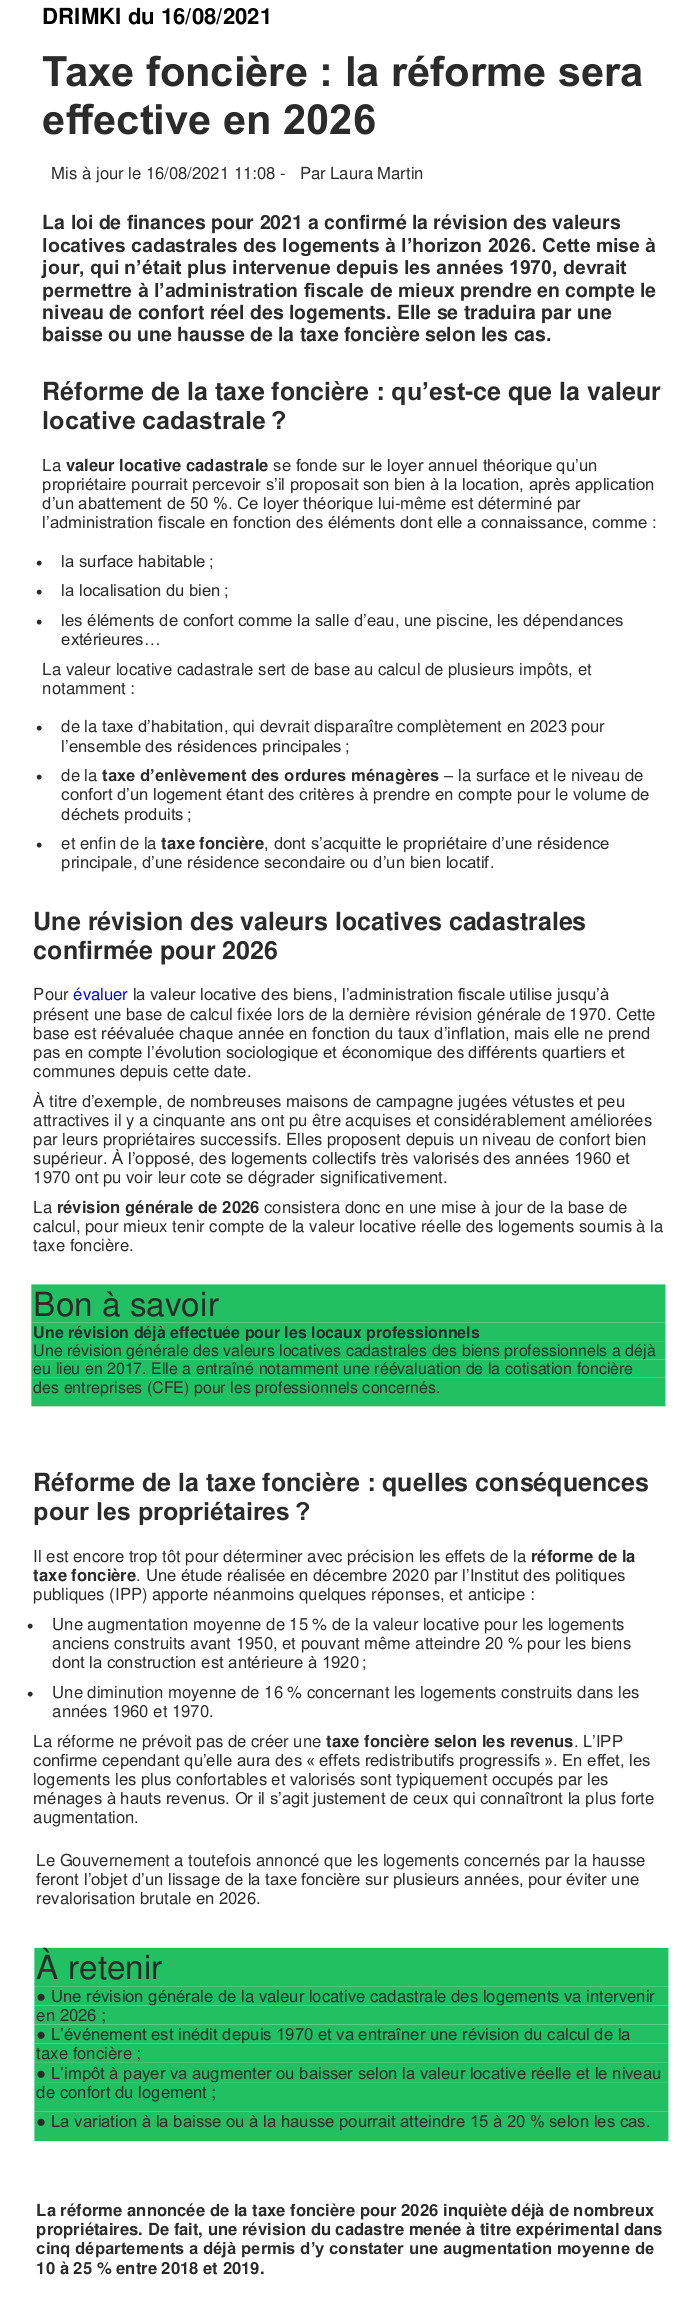 Réforme de la taxe foncière effective en 2026 Taxe13